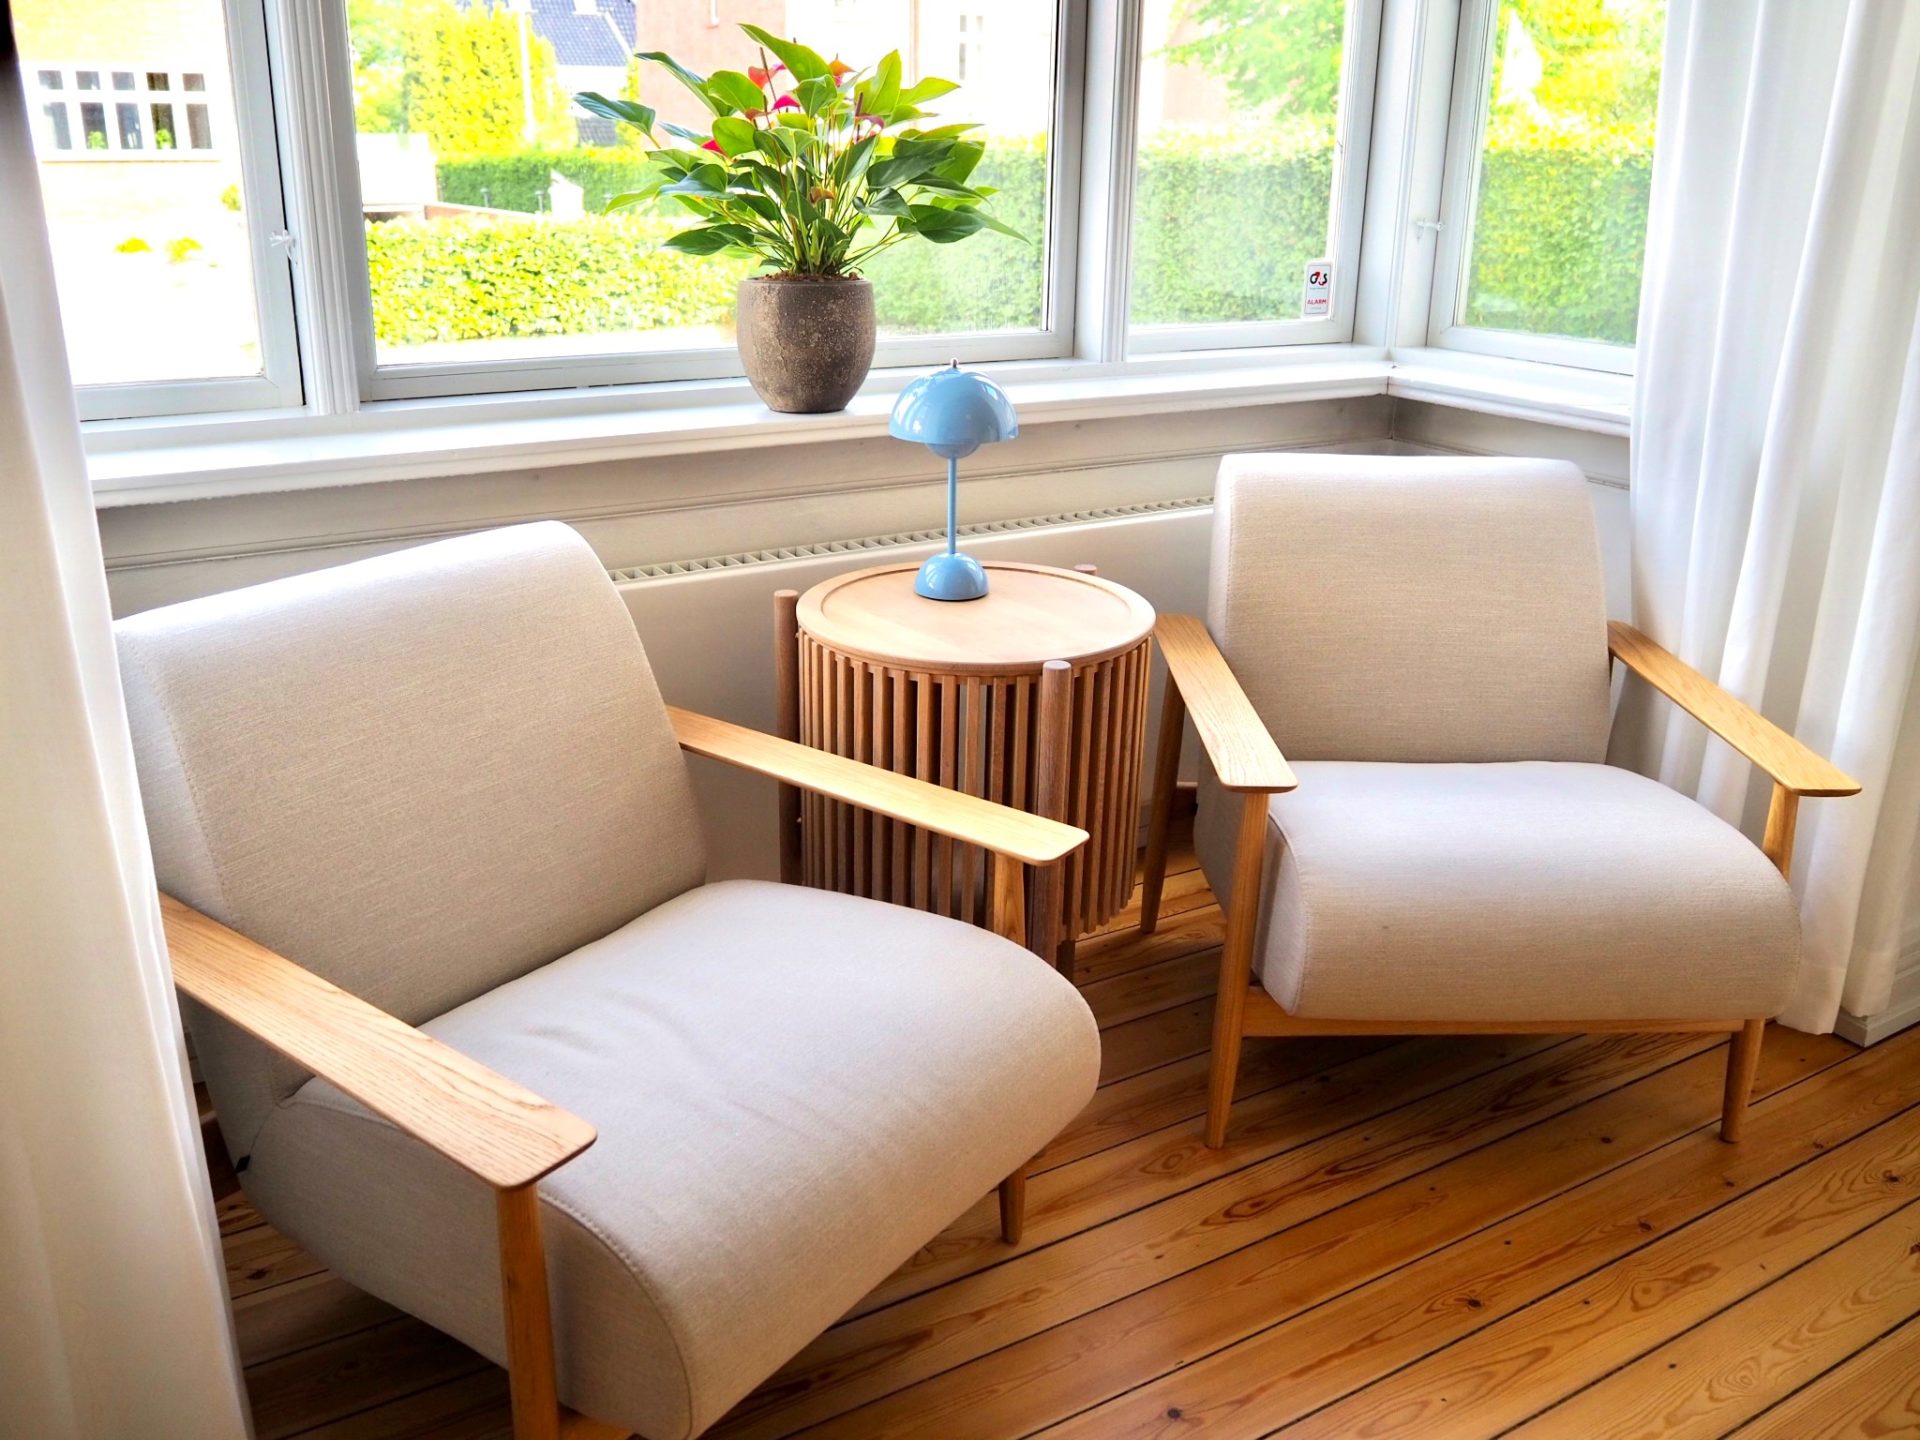 To stole ved bord i venteværelse på Langelinie Privathospital i Odense.